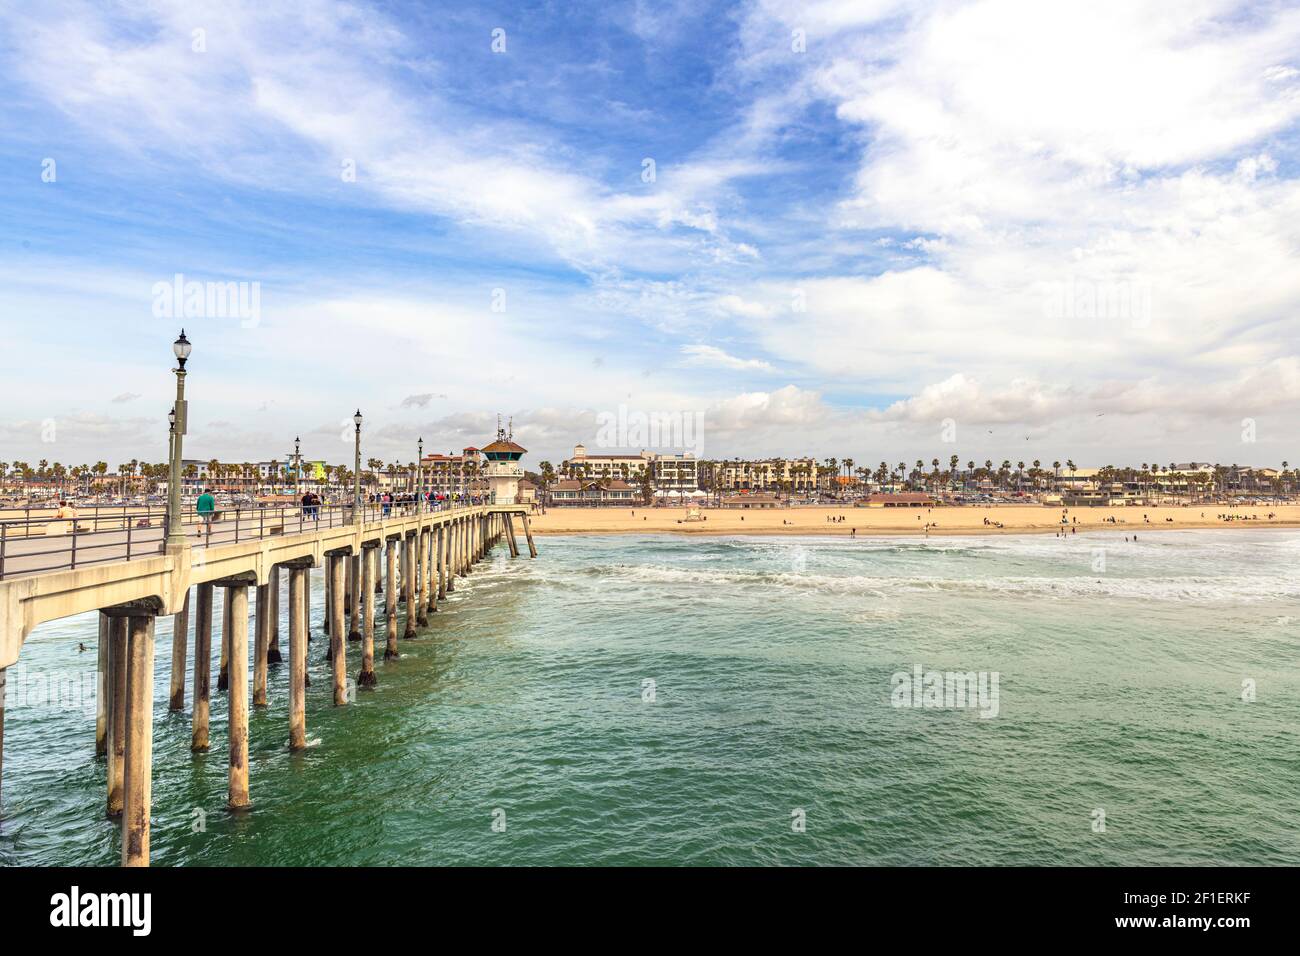 Der ikonische Huntington Beach Pier beherbergt jährlich Millionen von Touristen. Die Aussicht ist einfach wunderschön, vor allem an lebhaften sonnigen Tagen. Stockfoto